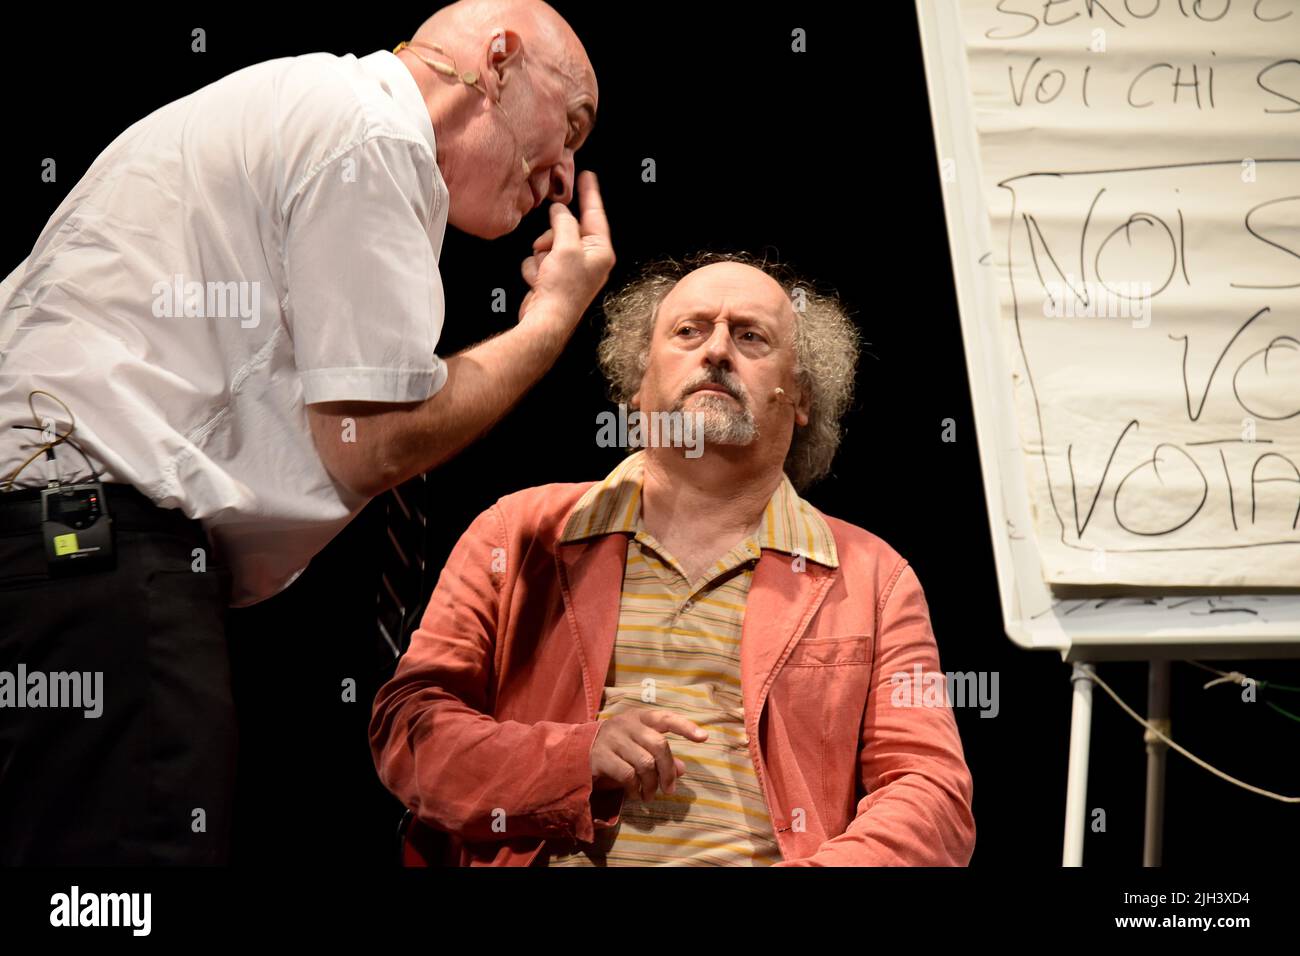 Spettacolo al Teatro Busca di Alba con Stefano Cornacchione y Sergio Sgrilli Foto de stock